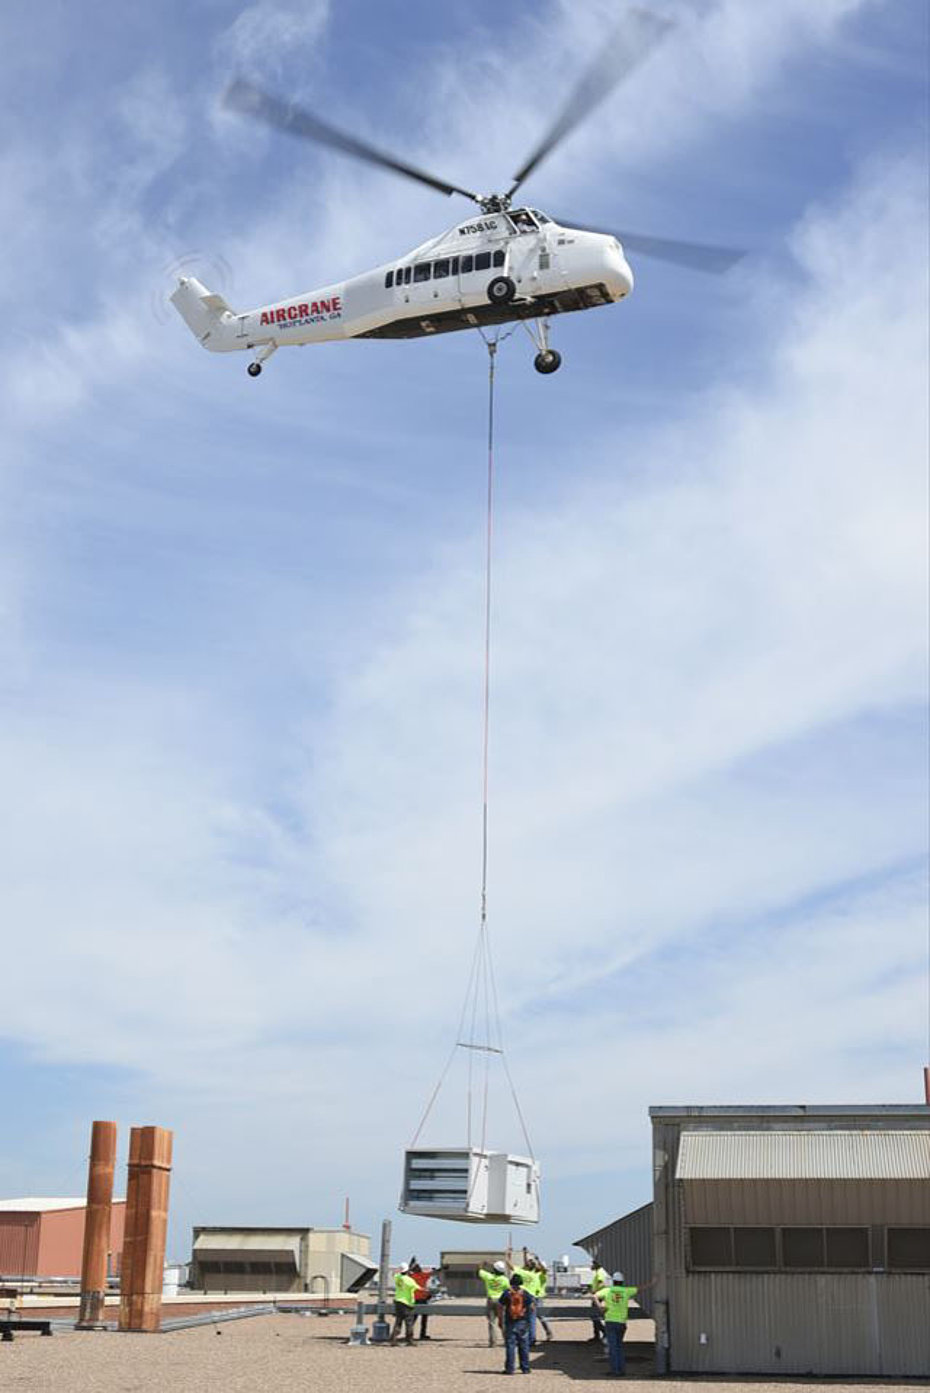 2018 - Il Sikorsky S-58JT N758AC della Aircrane impegnato nel trasporto di un condizionatore d'aria (web)